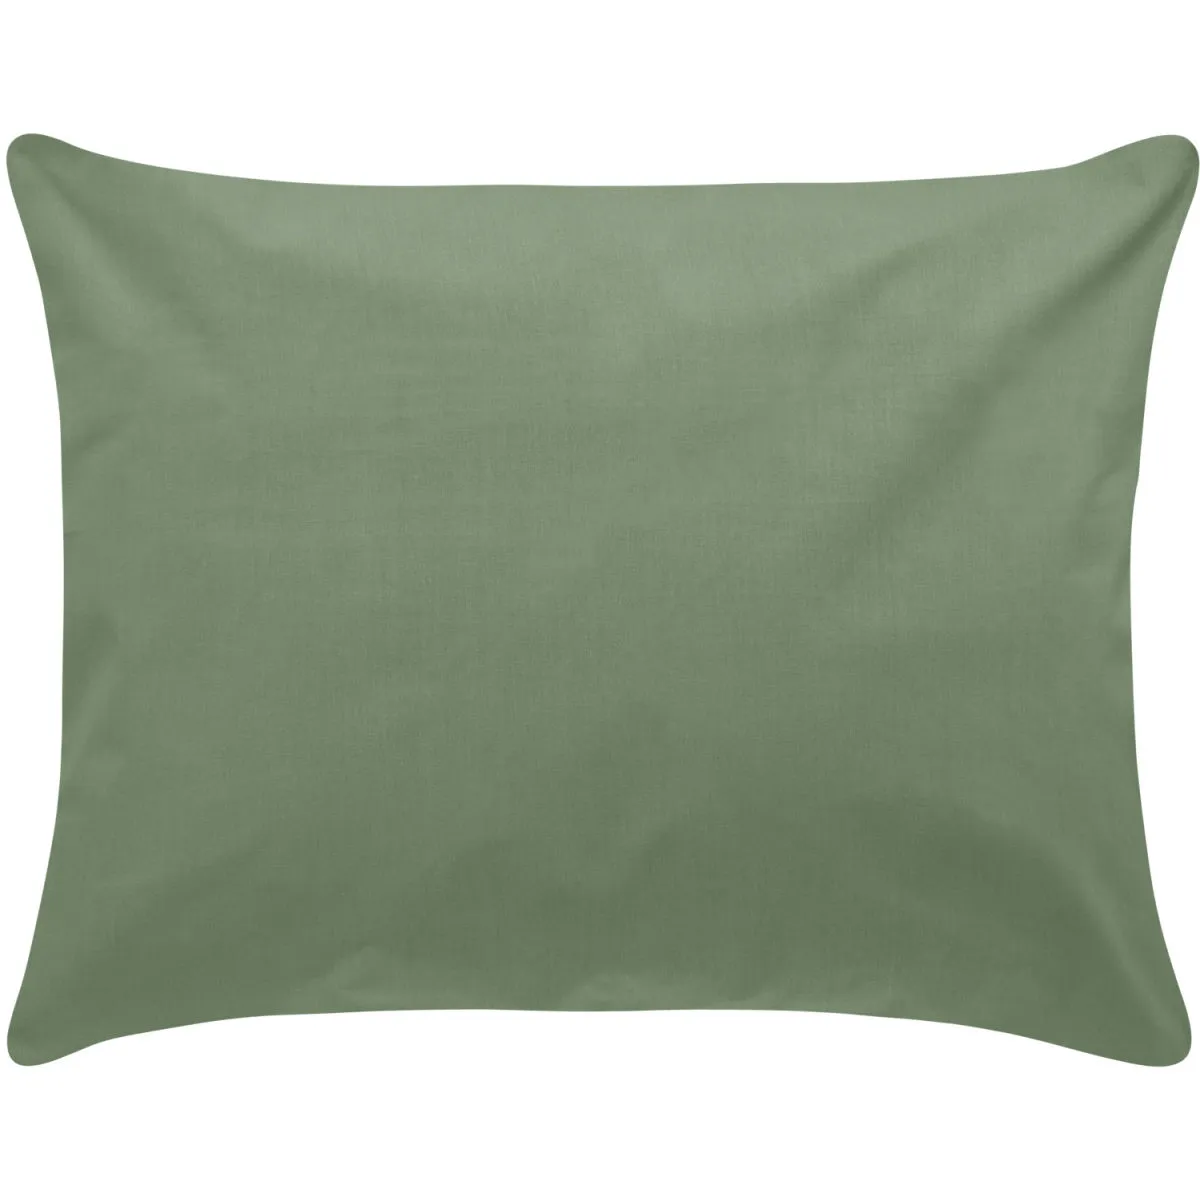 Federa cuscino Sienna chiusura a sacco ; 40x80 cm (LxL); cachi